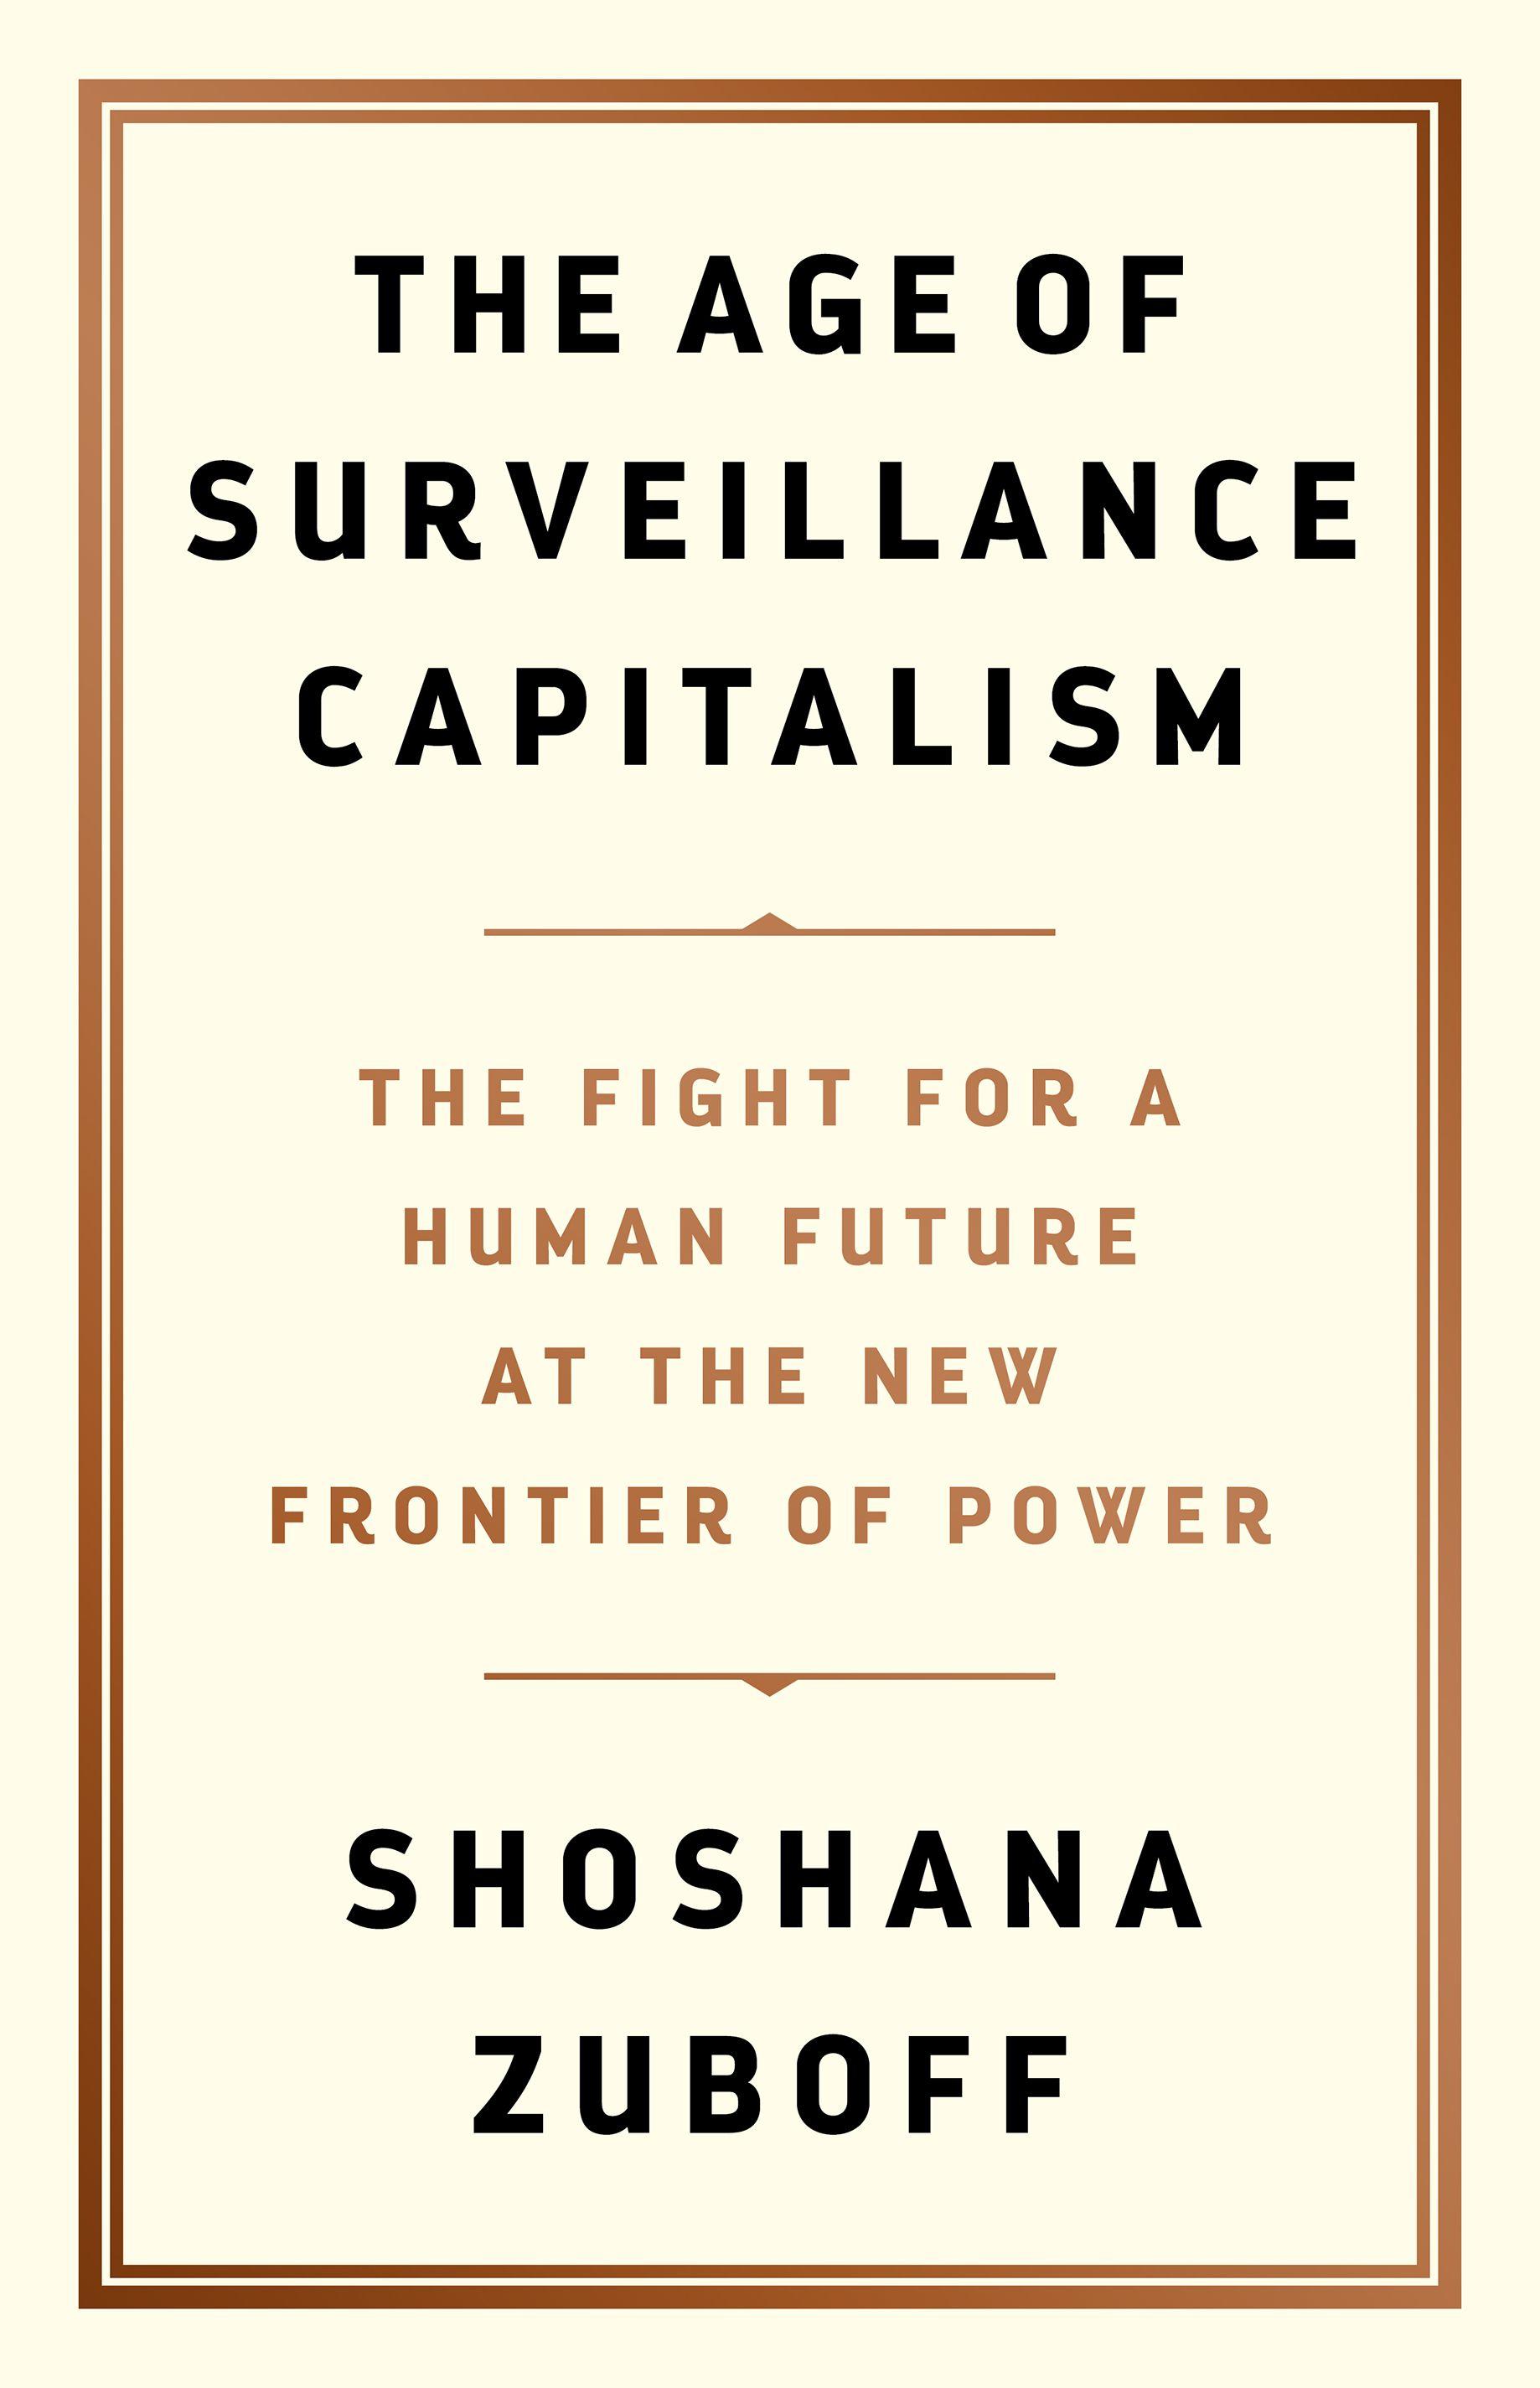 غلاف كتاب "عصر رأسمالية المراقبة: الكفاح من أجل مستقبل إنساني على الحدود الجديدة للسلطة" (2019)